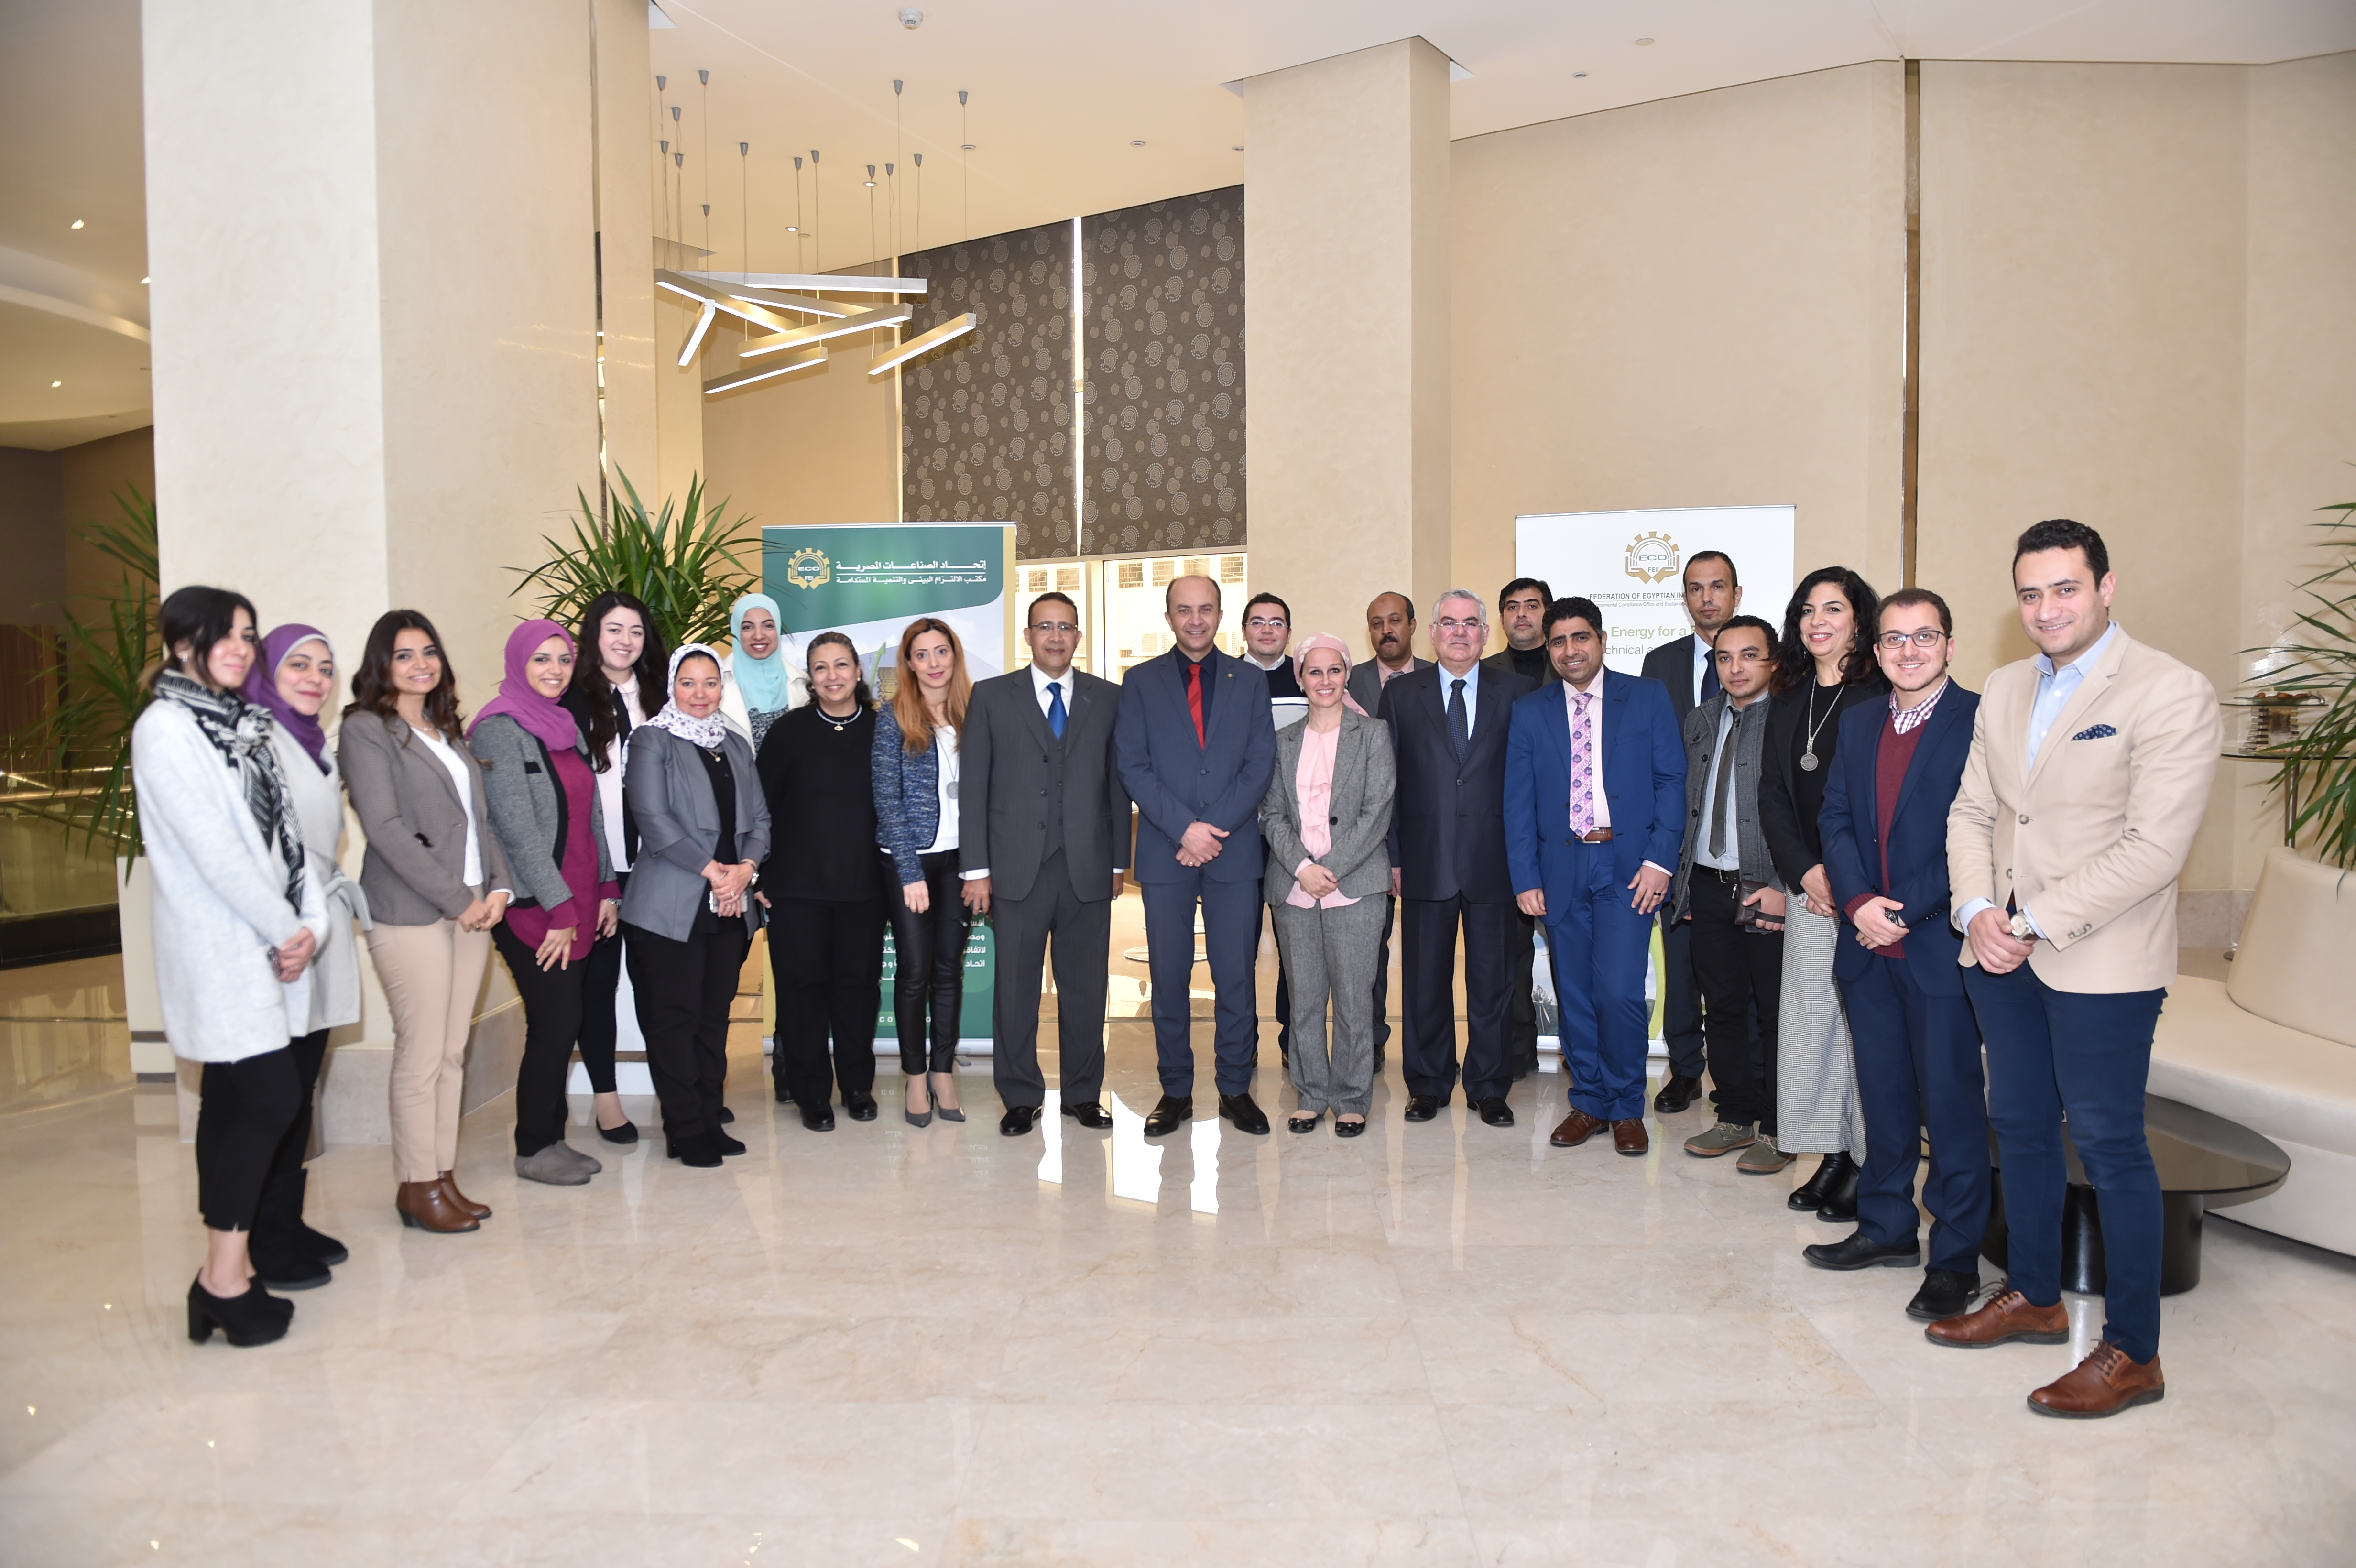 23 janvier 2019, Caire, Égypte – SWIM-H2020 SM Atelier sur les technologies et pratiques de conservation de l’eau et d’utilisation efficace de l’eau par les industries